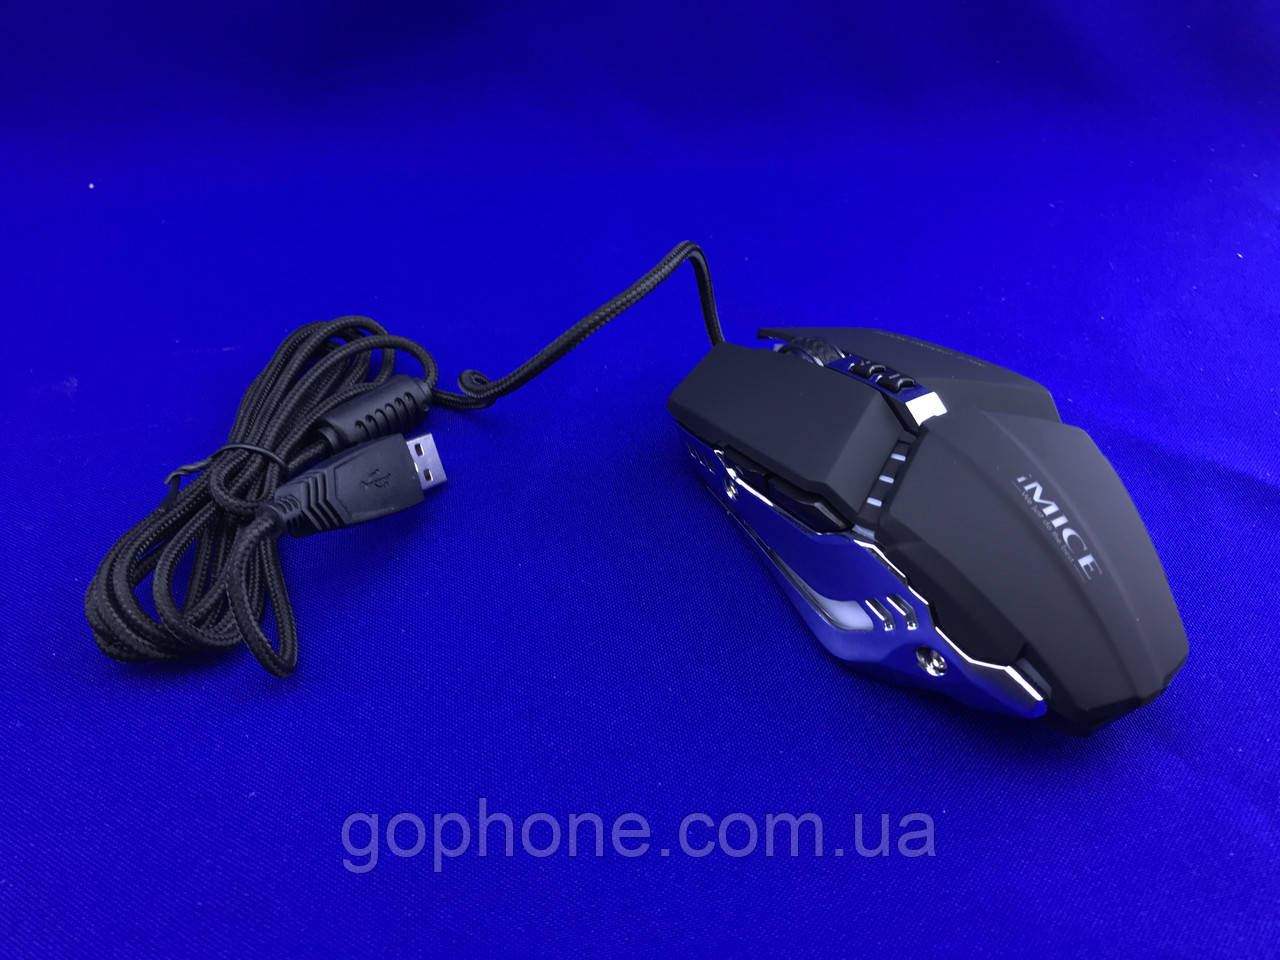 Мишка комп'ютерна провідна iMICE T80